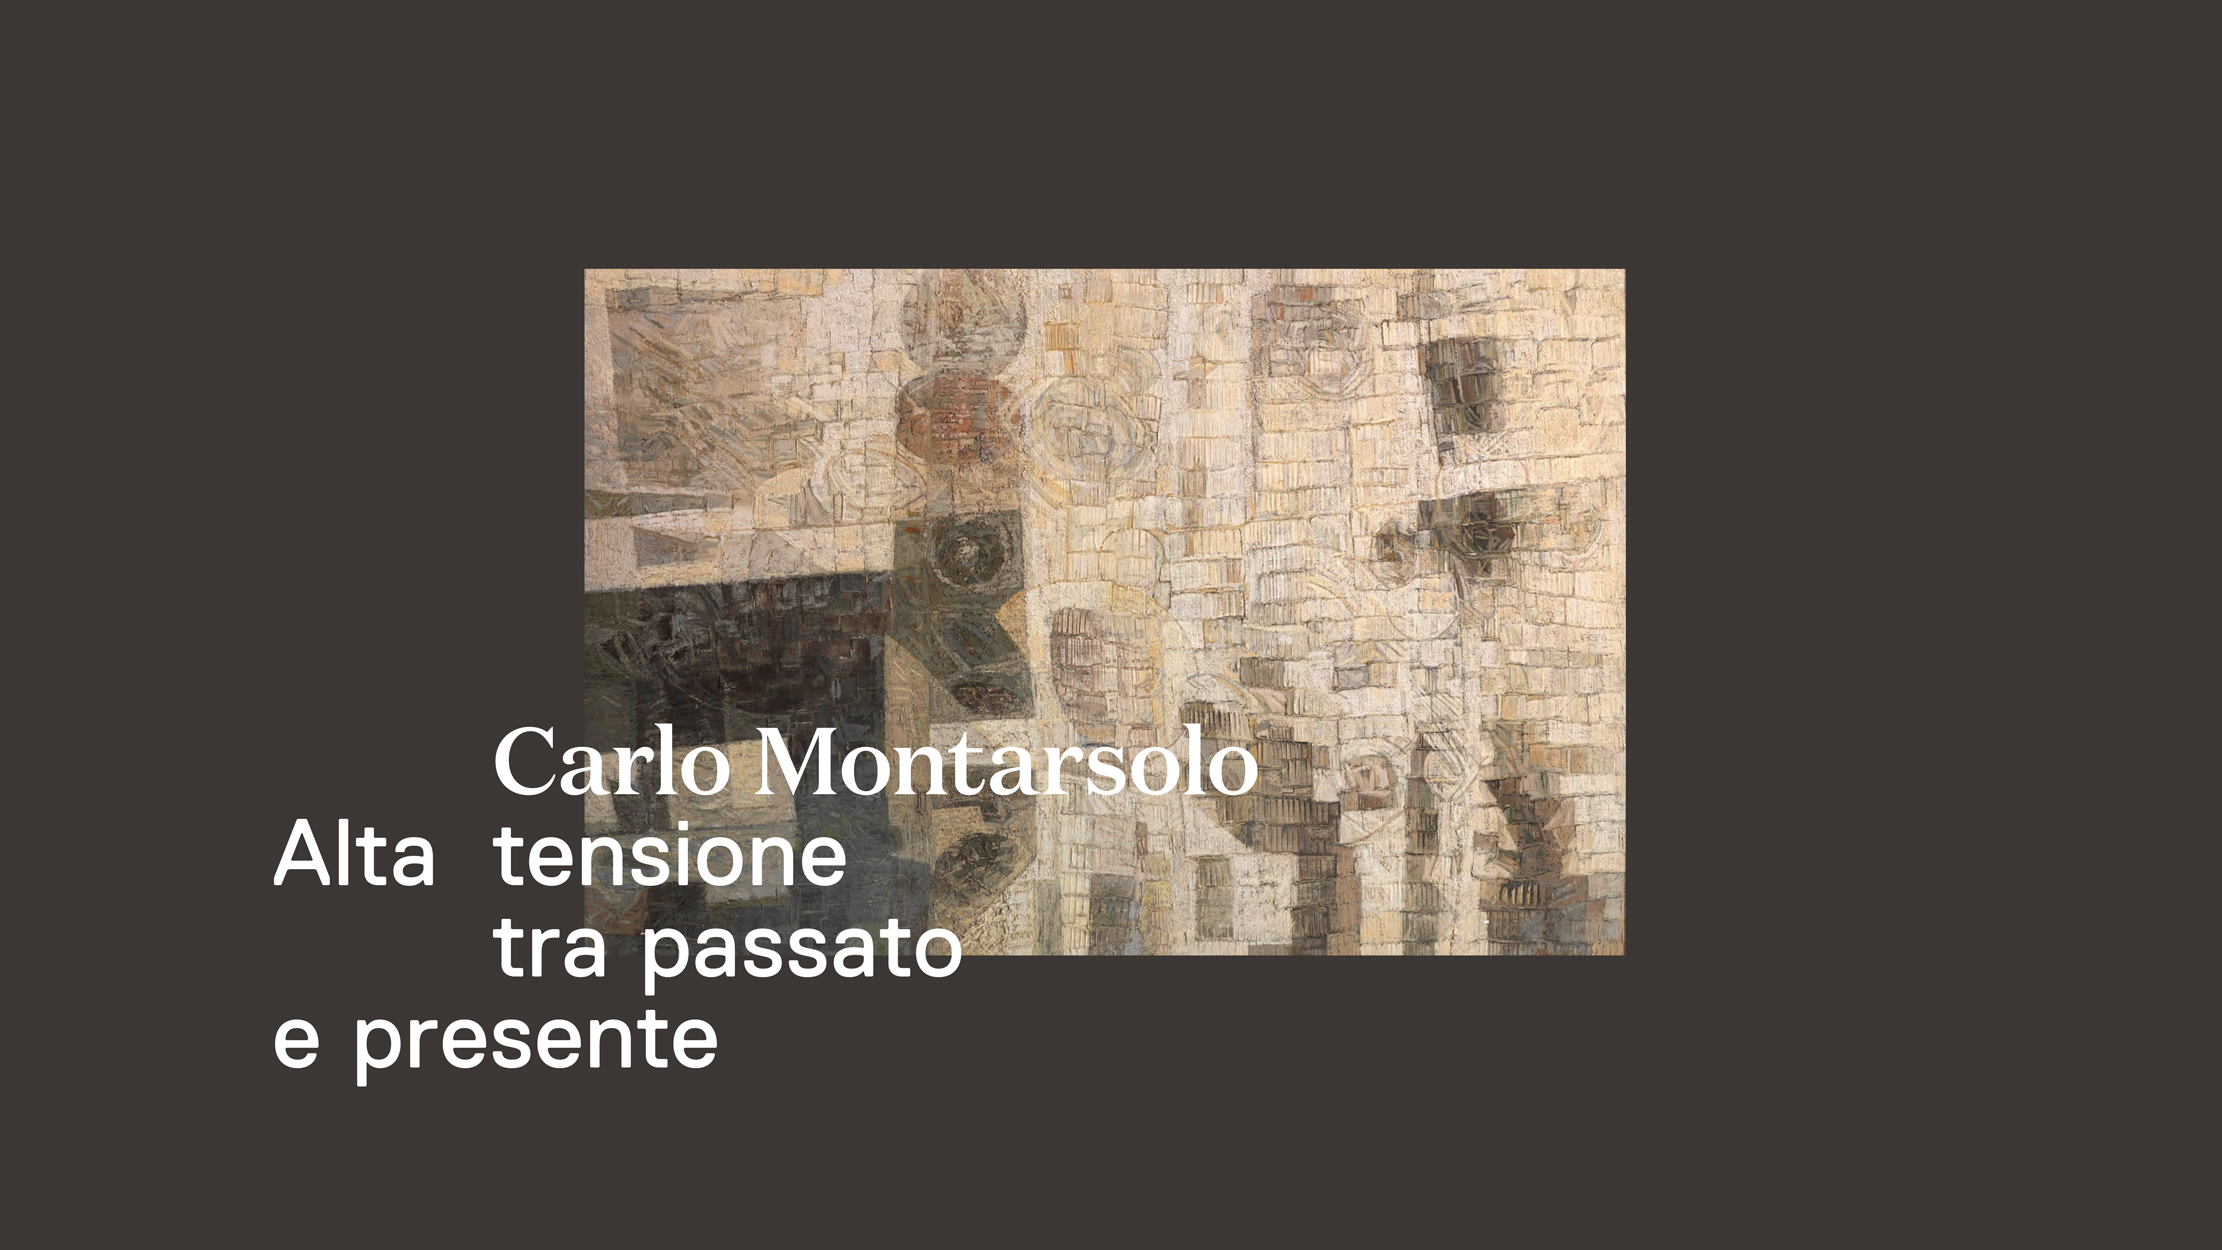 Carlo Montarsolo. Alta tensione tra passato e presente